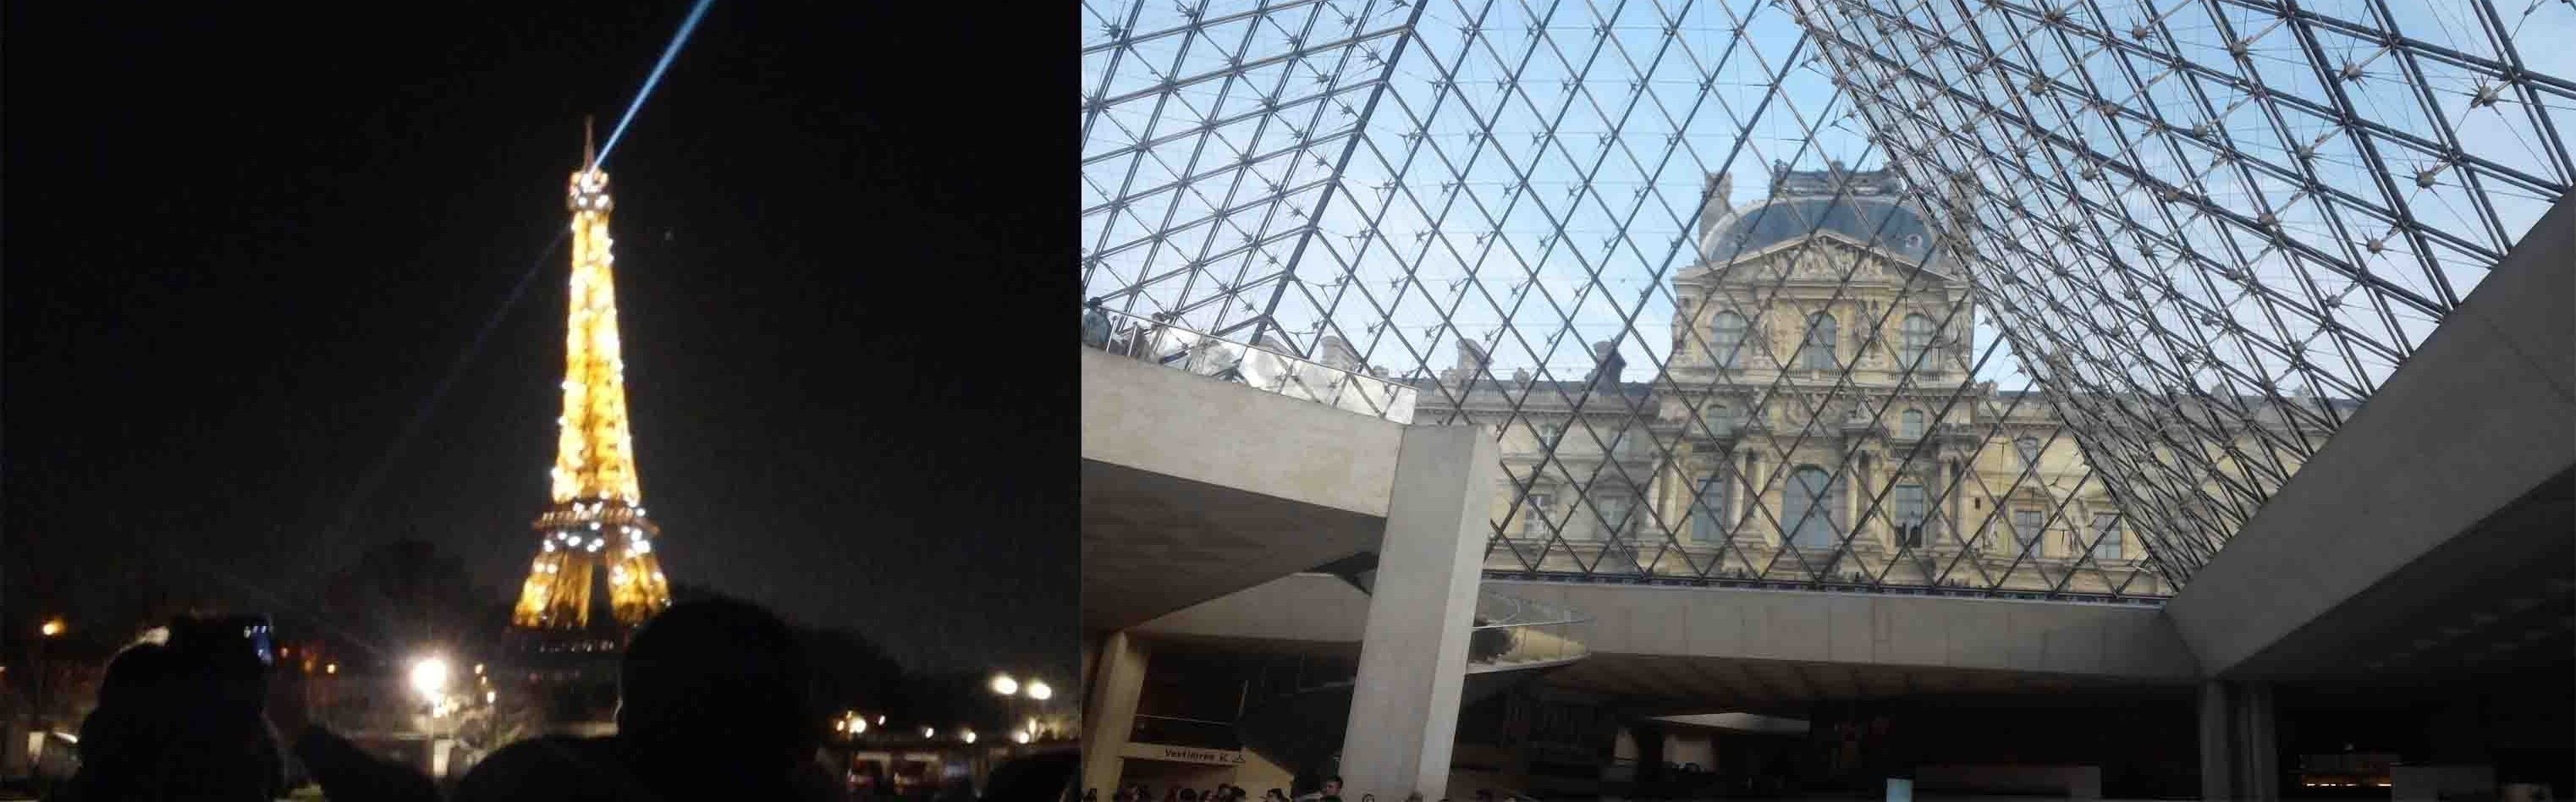 루브르박물관과 에펠탑.jpg